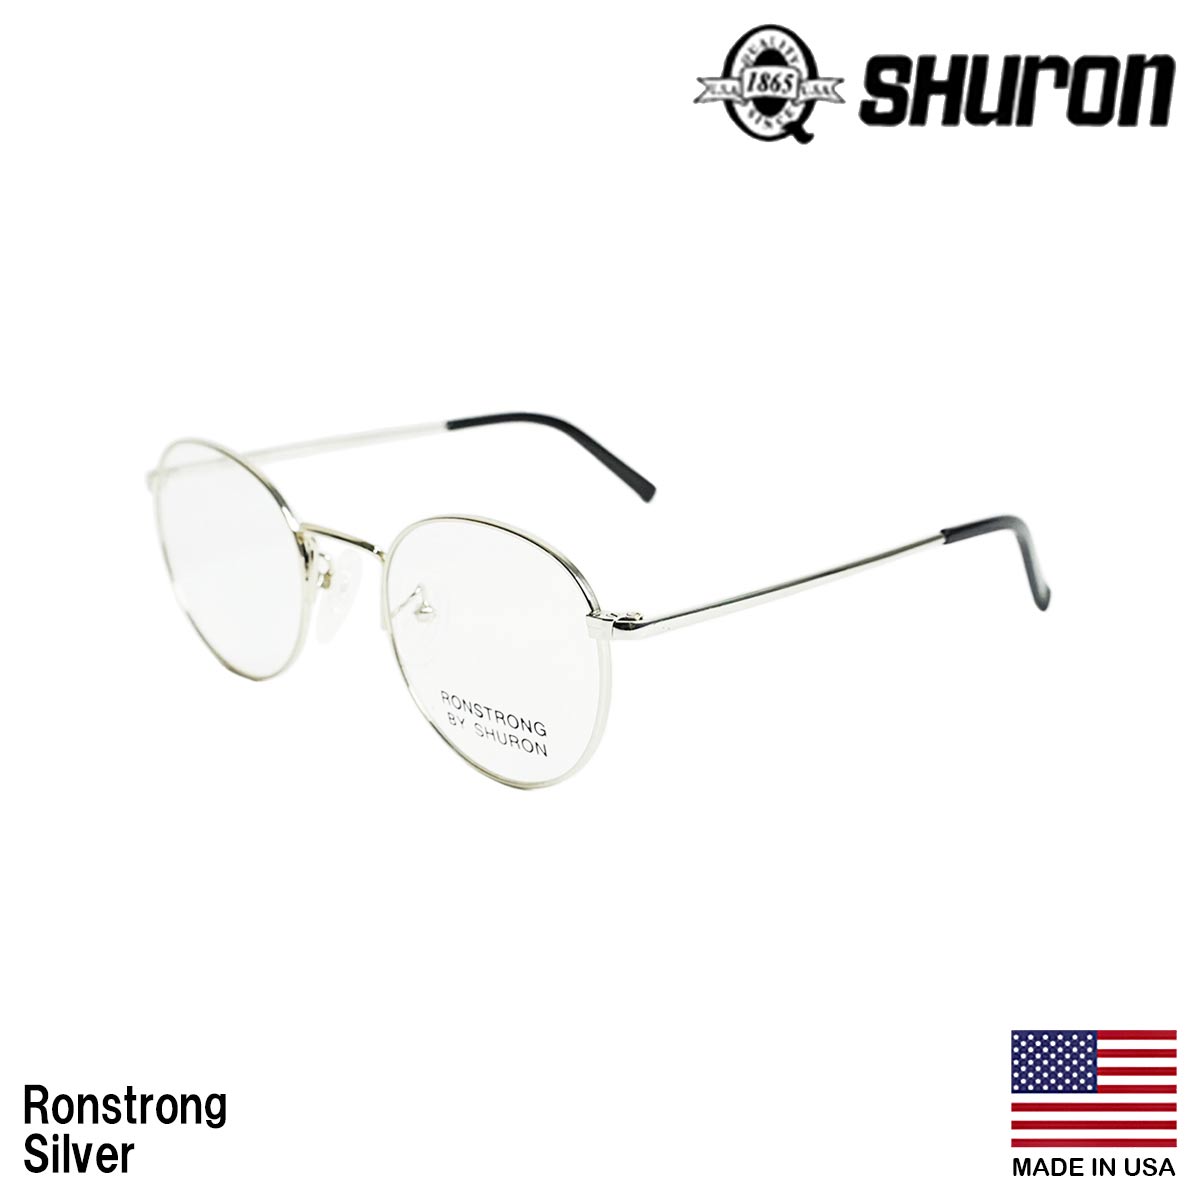 シュロン SHURON メガネ フレーム ロンストロング 眼鏡 アメリカ製 米国製 ボストン メタルフレーム ゴールド シルバー